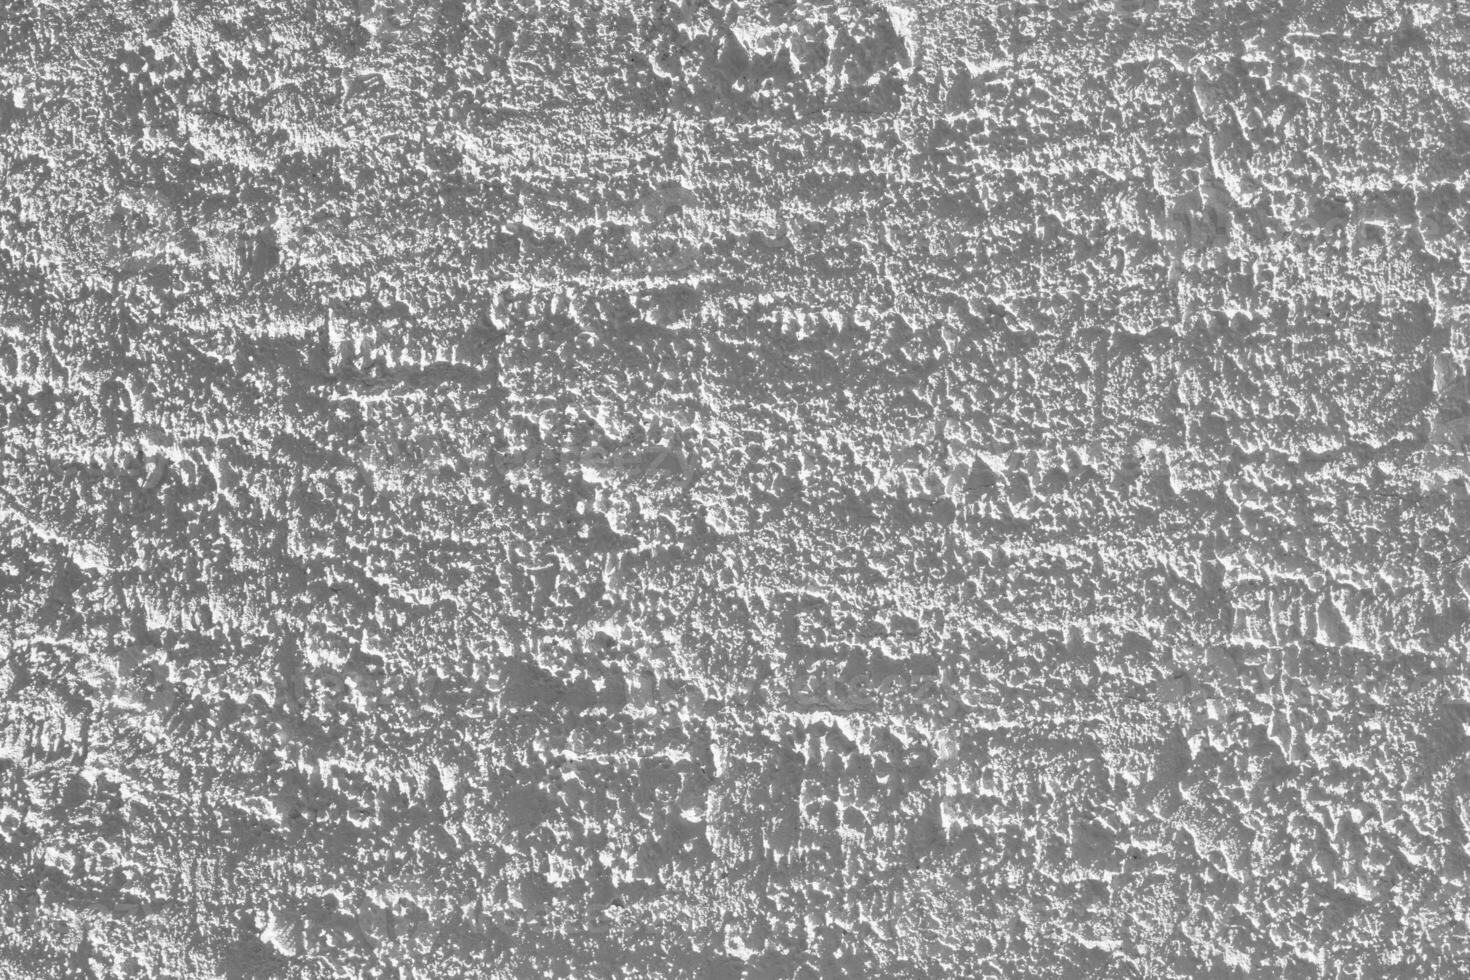 branco cimento parede textura com natural padronizar para fundo foto